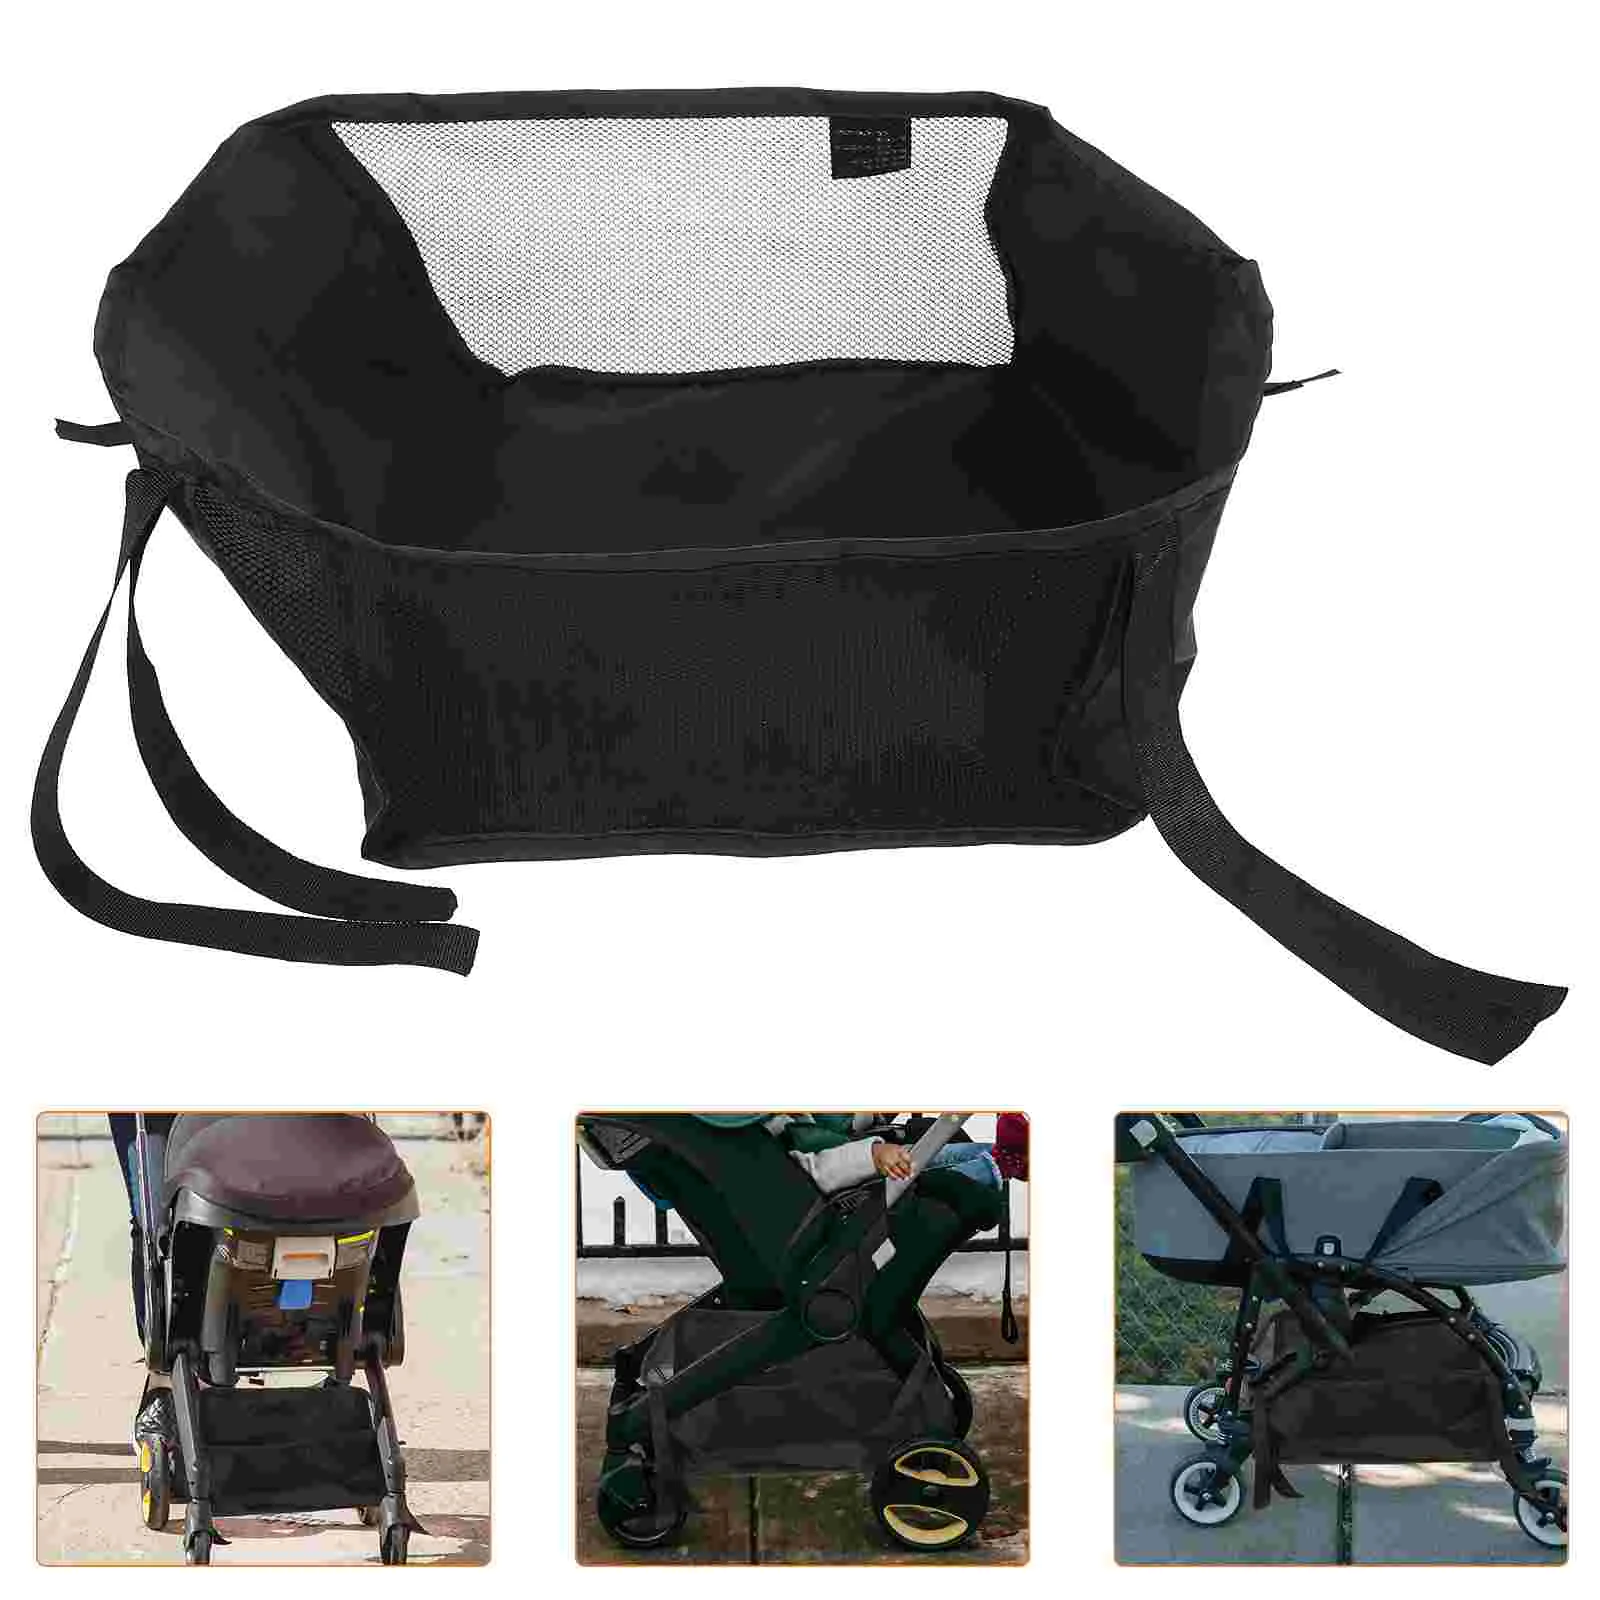 

Stroller Bottom Organizer Basket Wagon Bag Storage Case Pouch Baby Diaper Universal